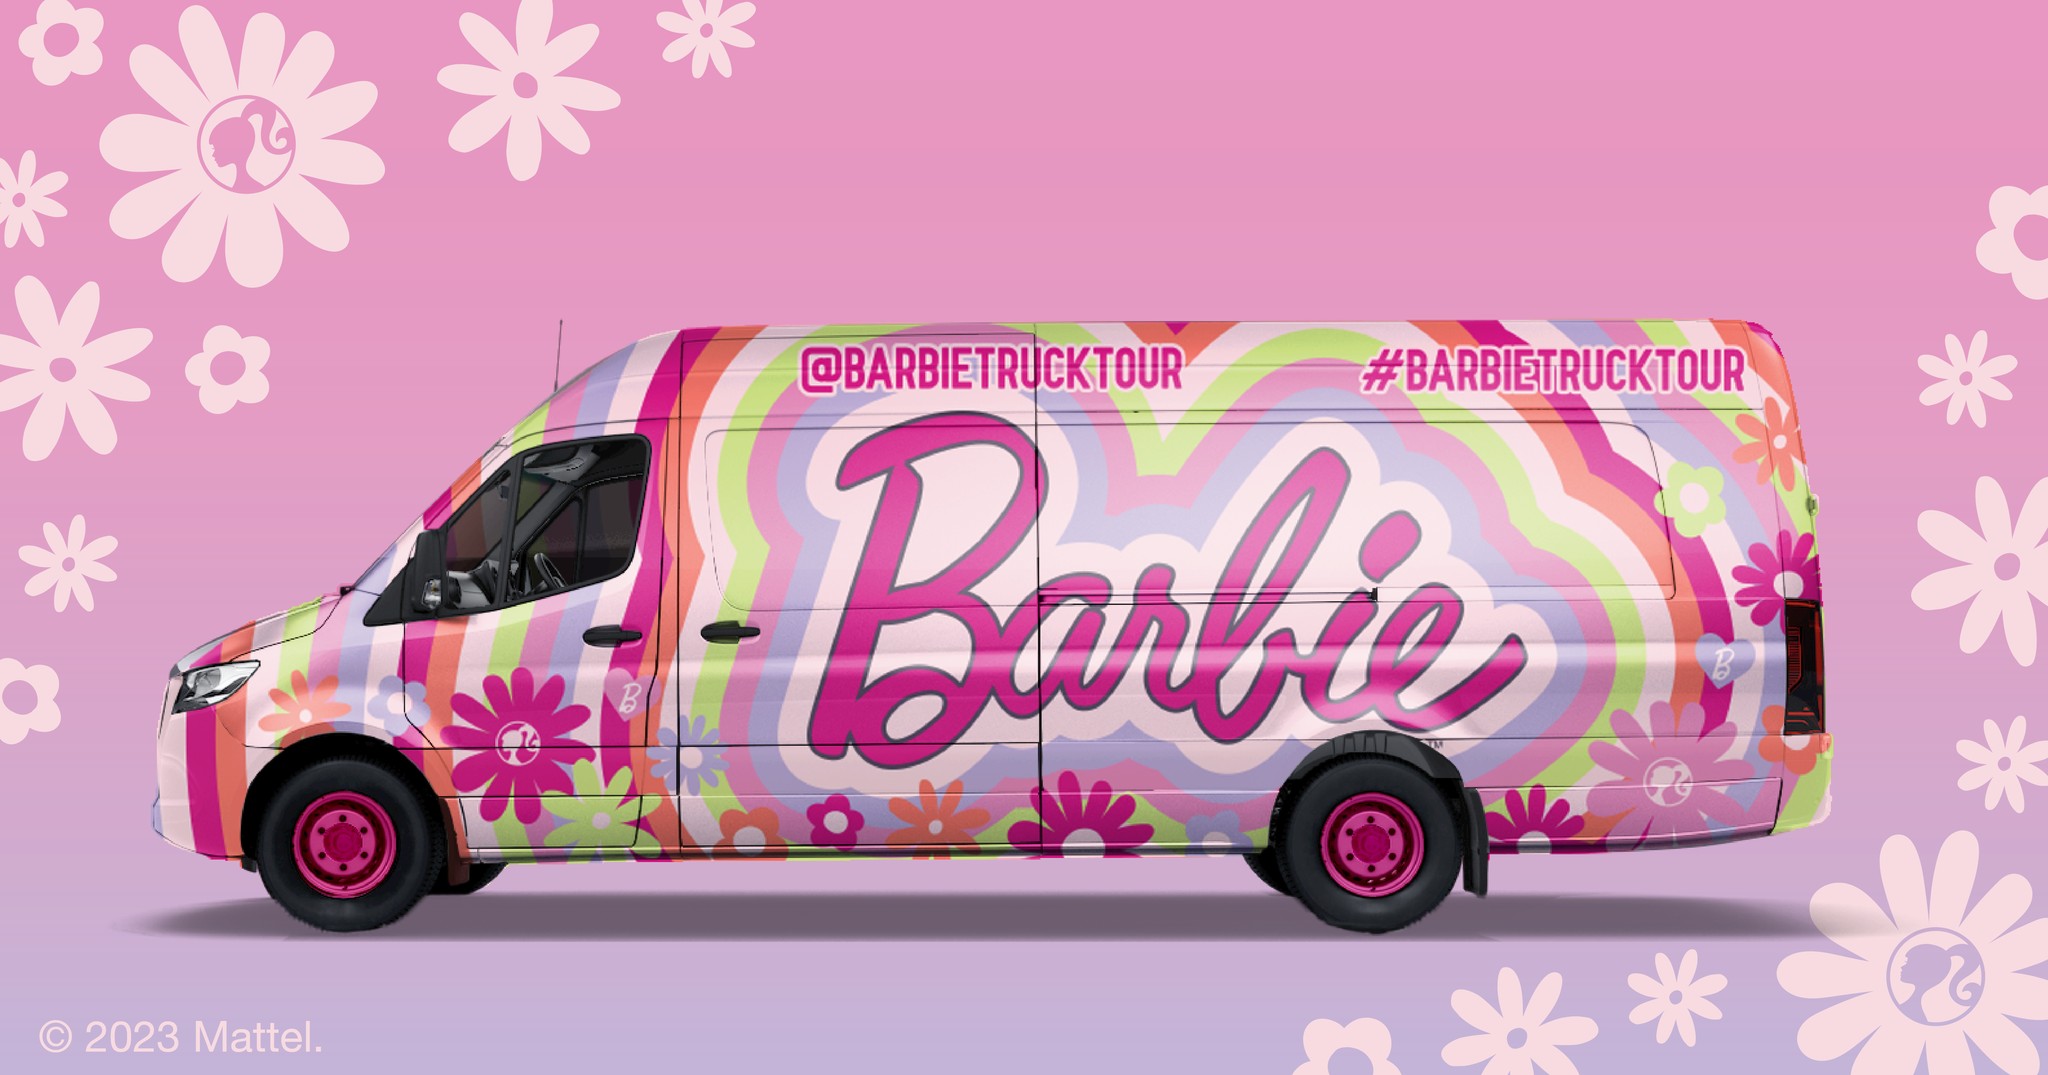 Barbie Truck Tour FB Image